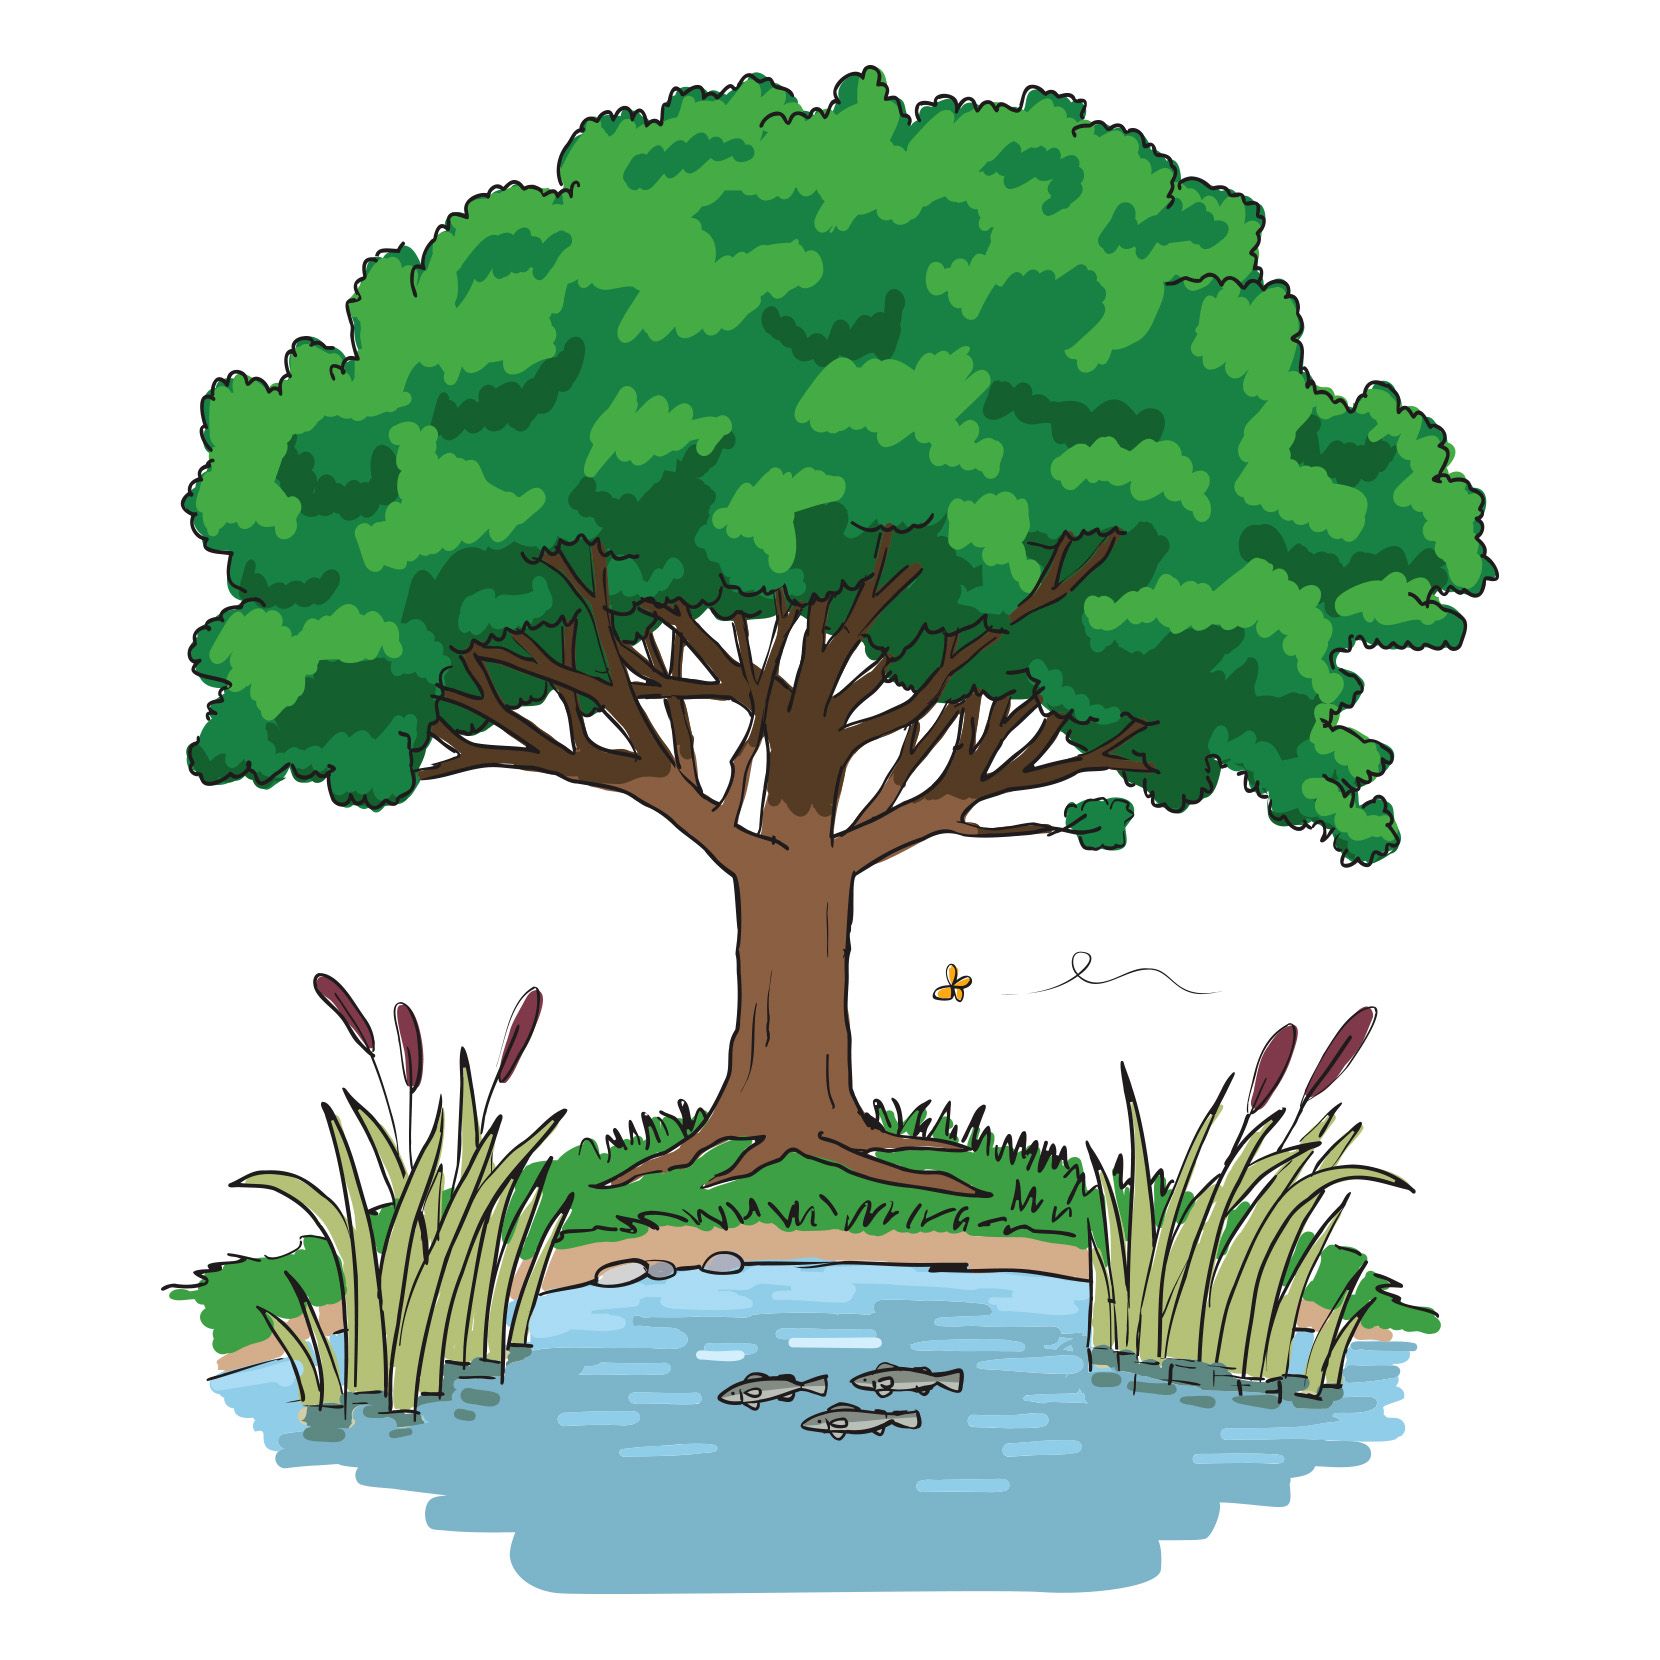 Bild der Somaha Stiftung: Zeichnung von einem Laubbaum am Wasser, in dem Fische schwimmen und Uferpflanzen wachsen.